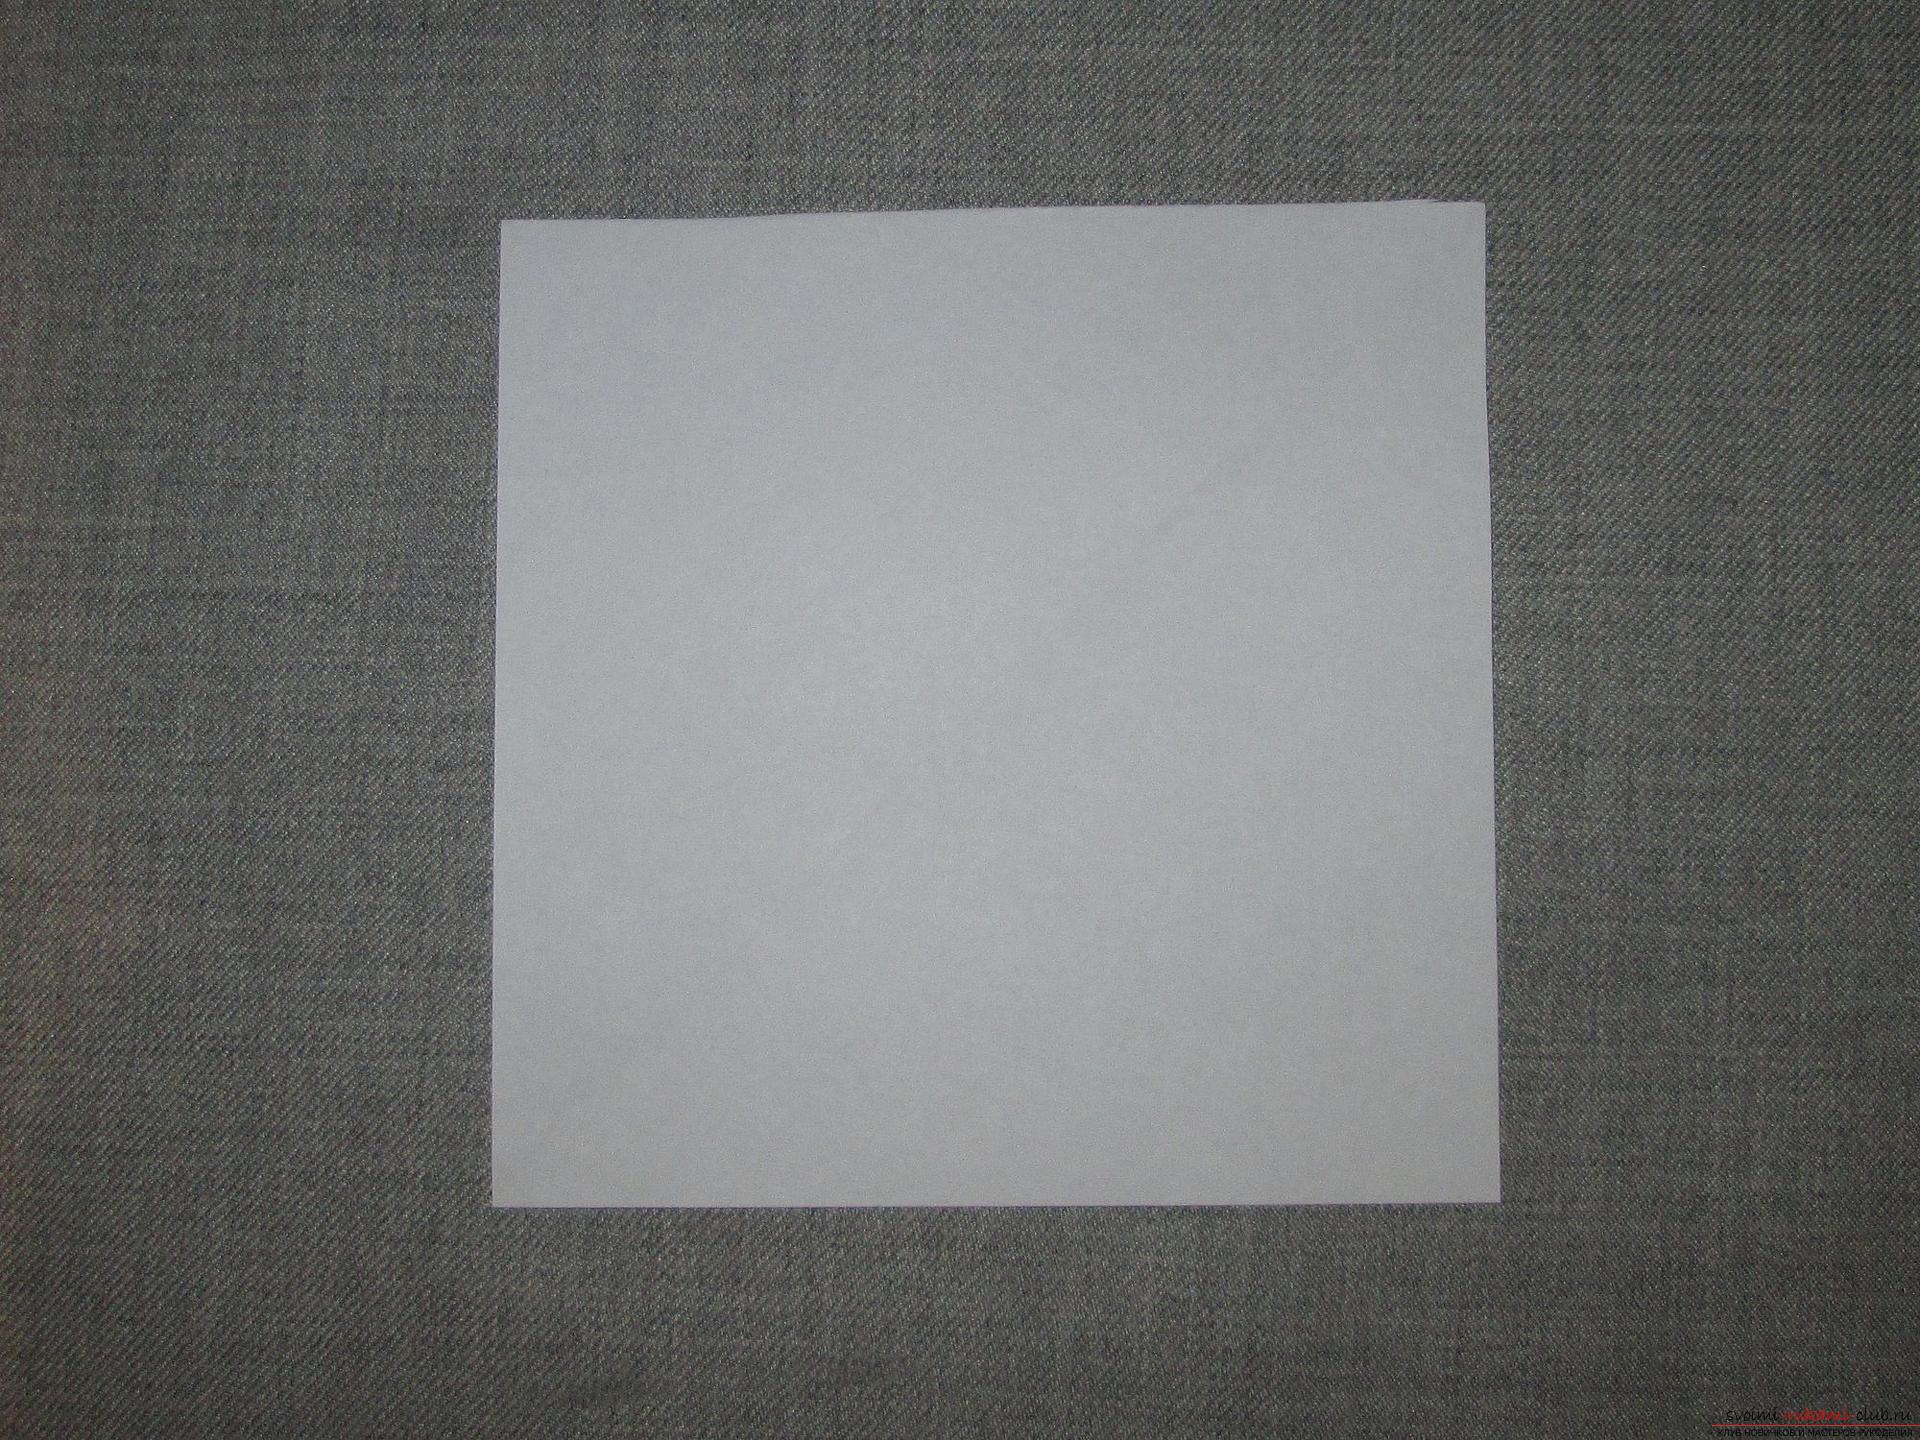 Квадратный лист бумаги со стороной 2